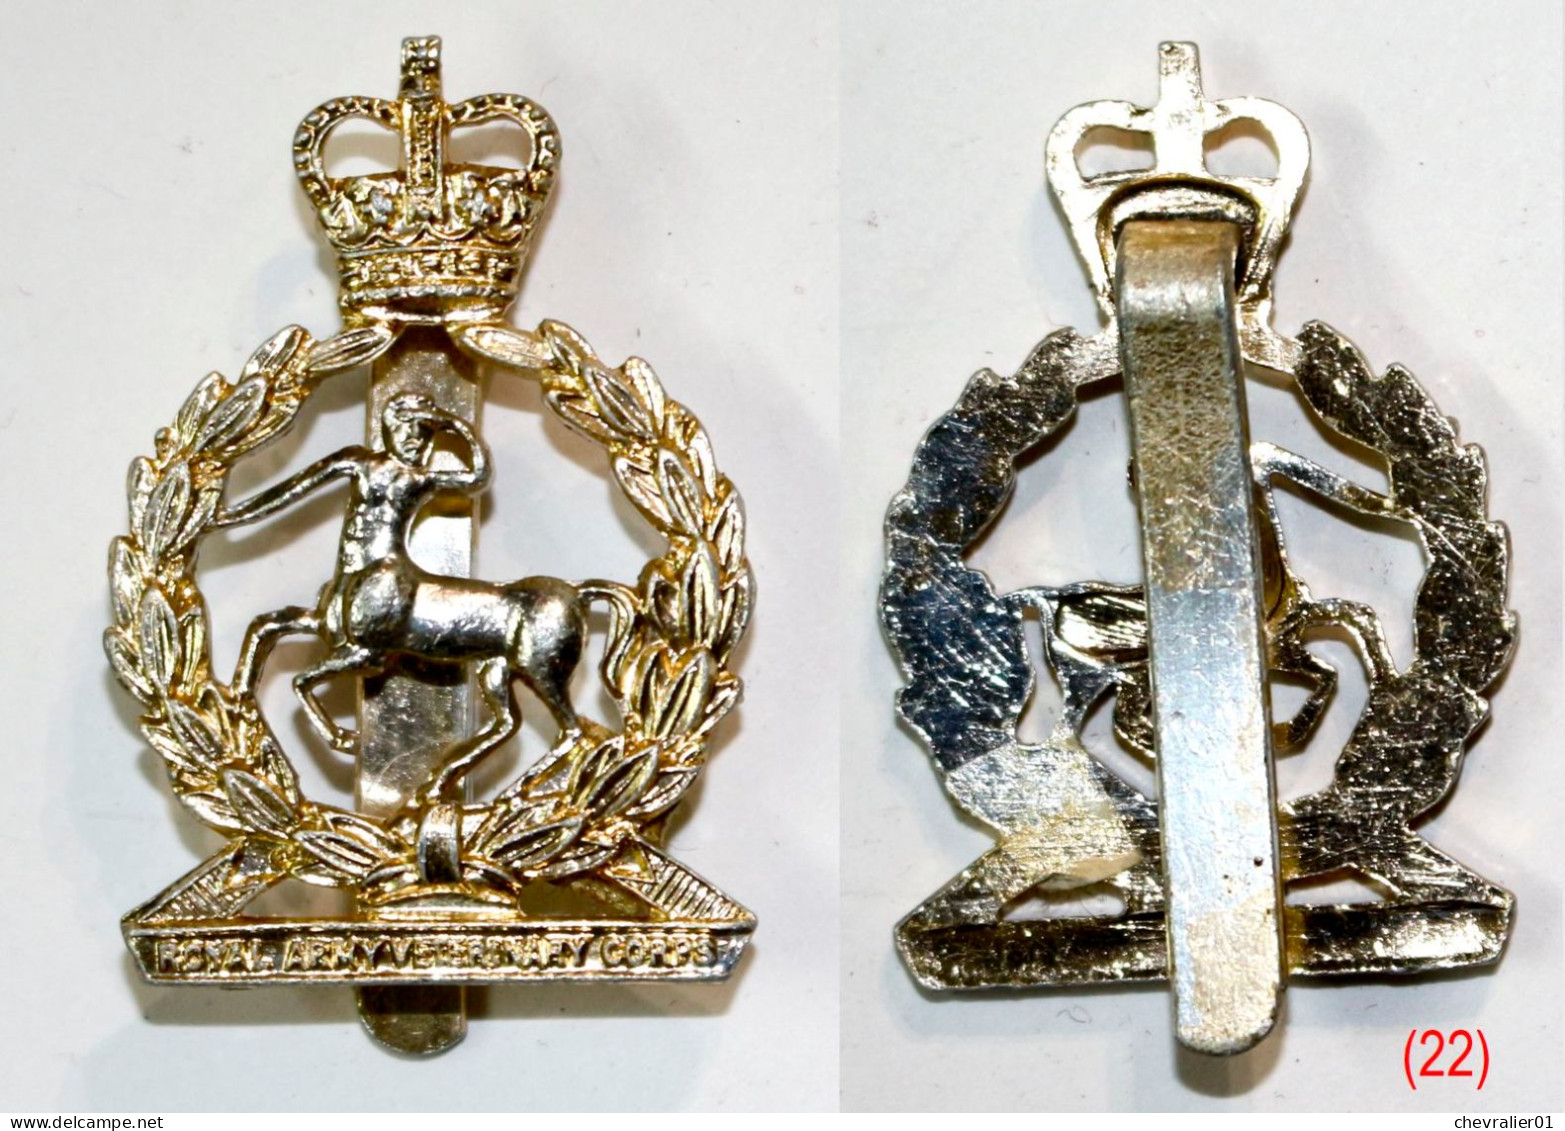 22 Insignes de béret de l’armée anglaise – cap badge